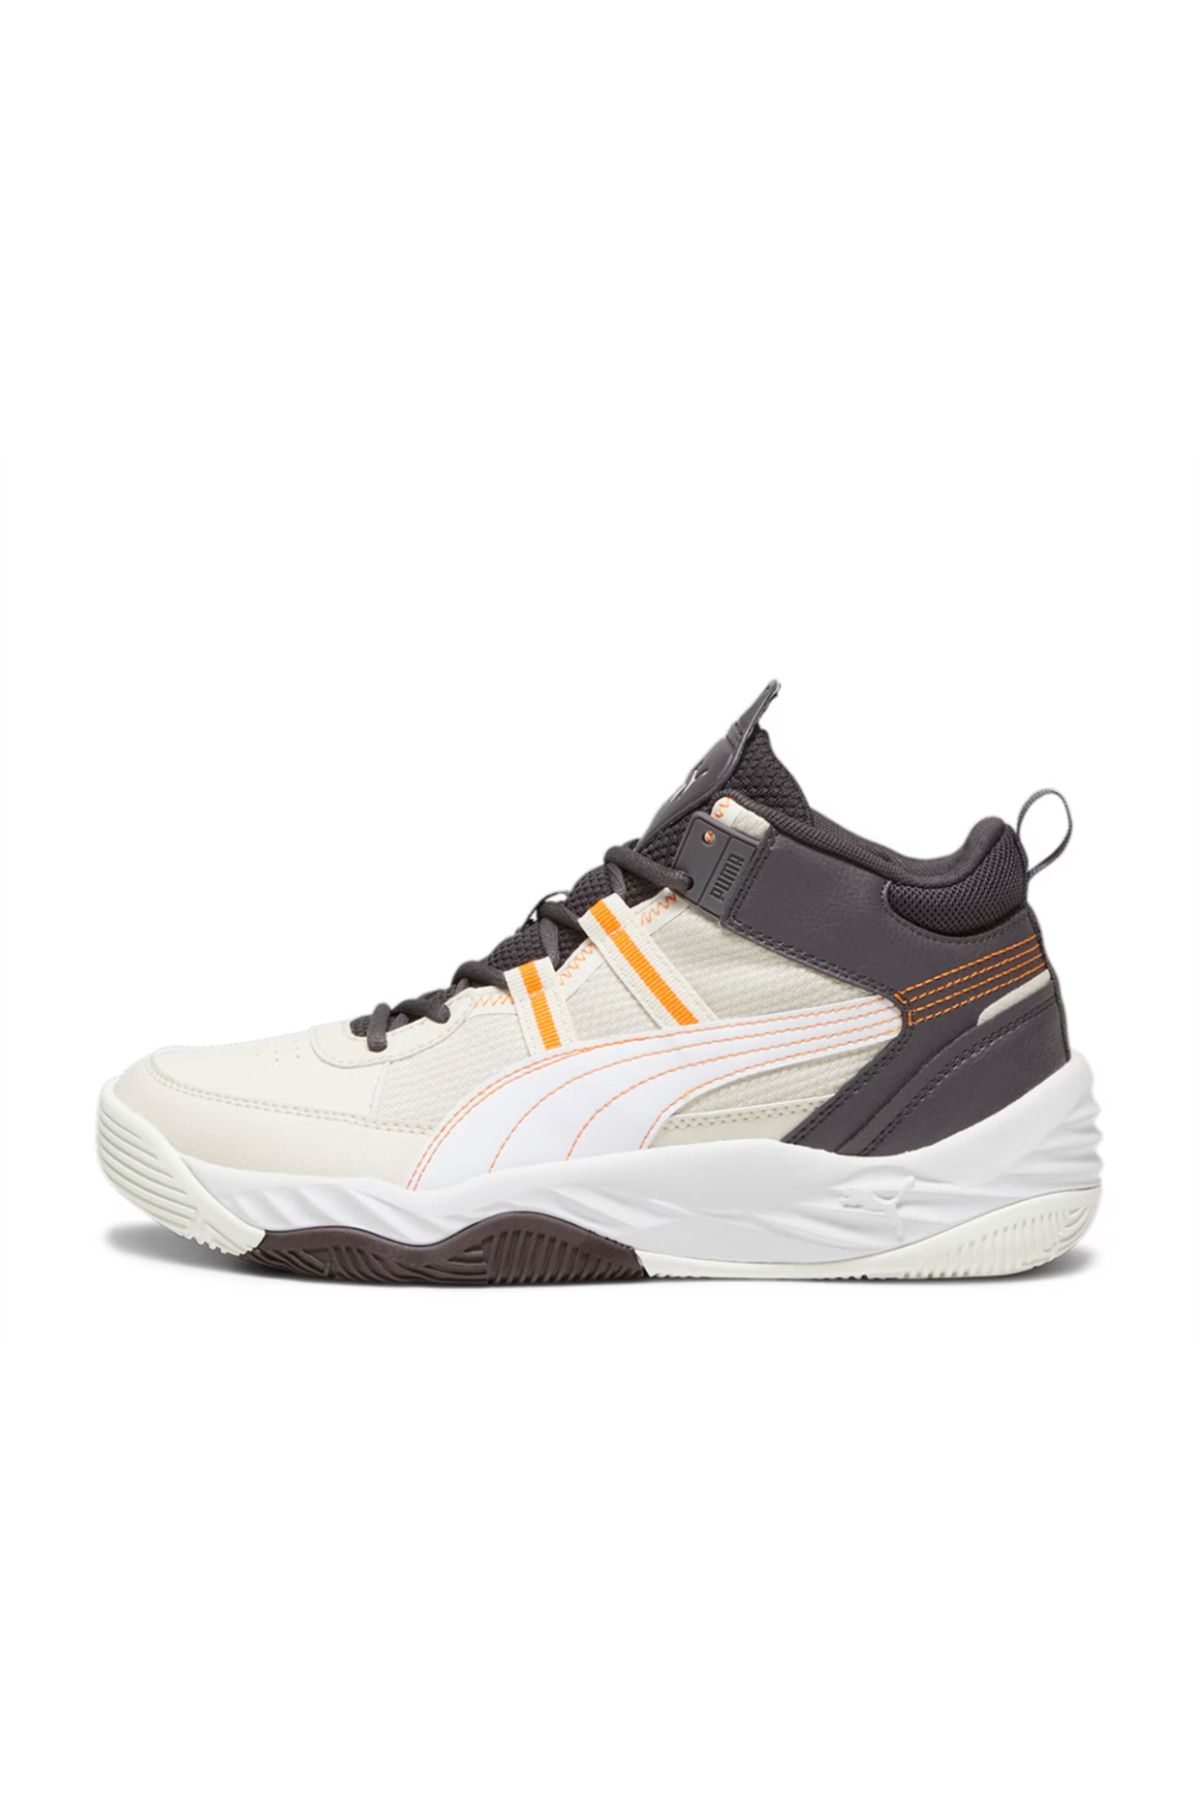 Puma Erkek Basketbol Ayakkabı Beyaz/Koyu Kömür